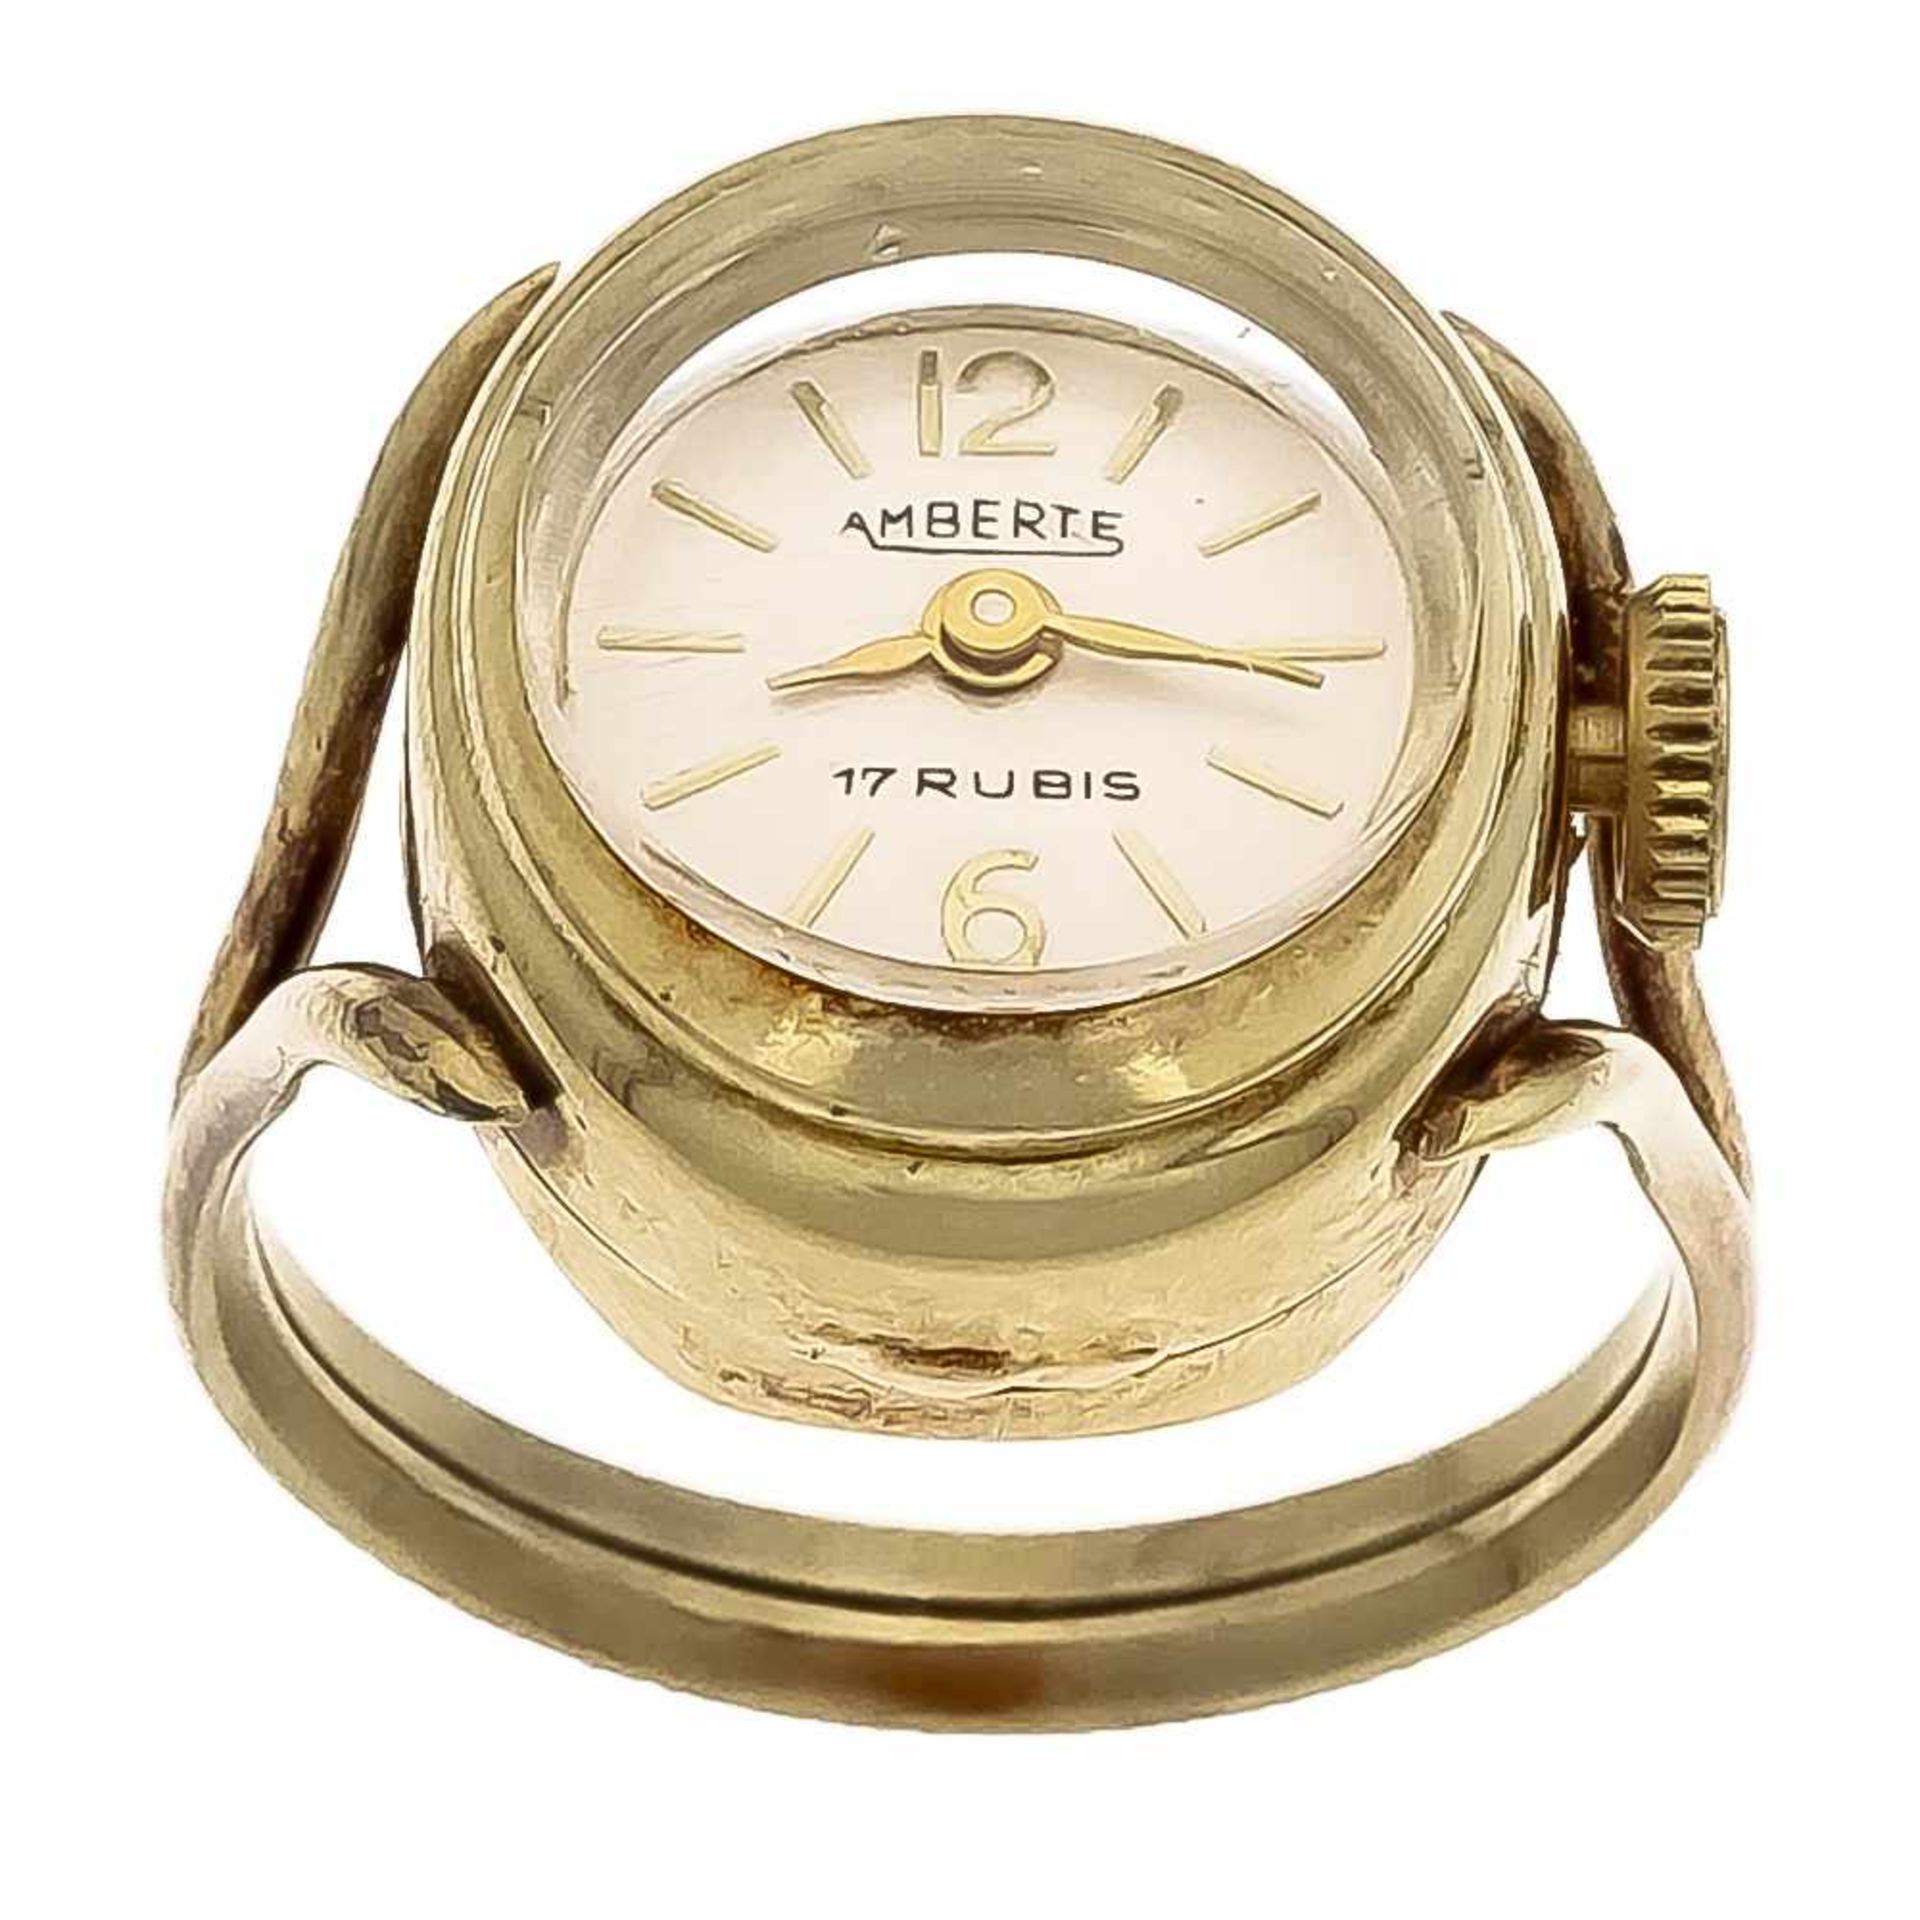 Uhren-Ring GG 585/000 mit einer Uhr, Amberte, Handaufzug, 17 Rubine, D. 17 x 16 mm, läuft,RG 54, 6,2 - Bild 2 aus 2